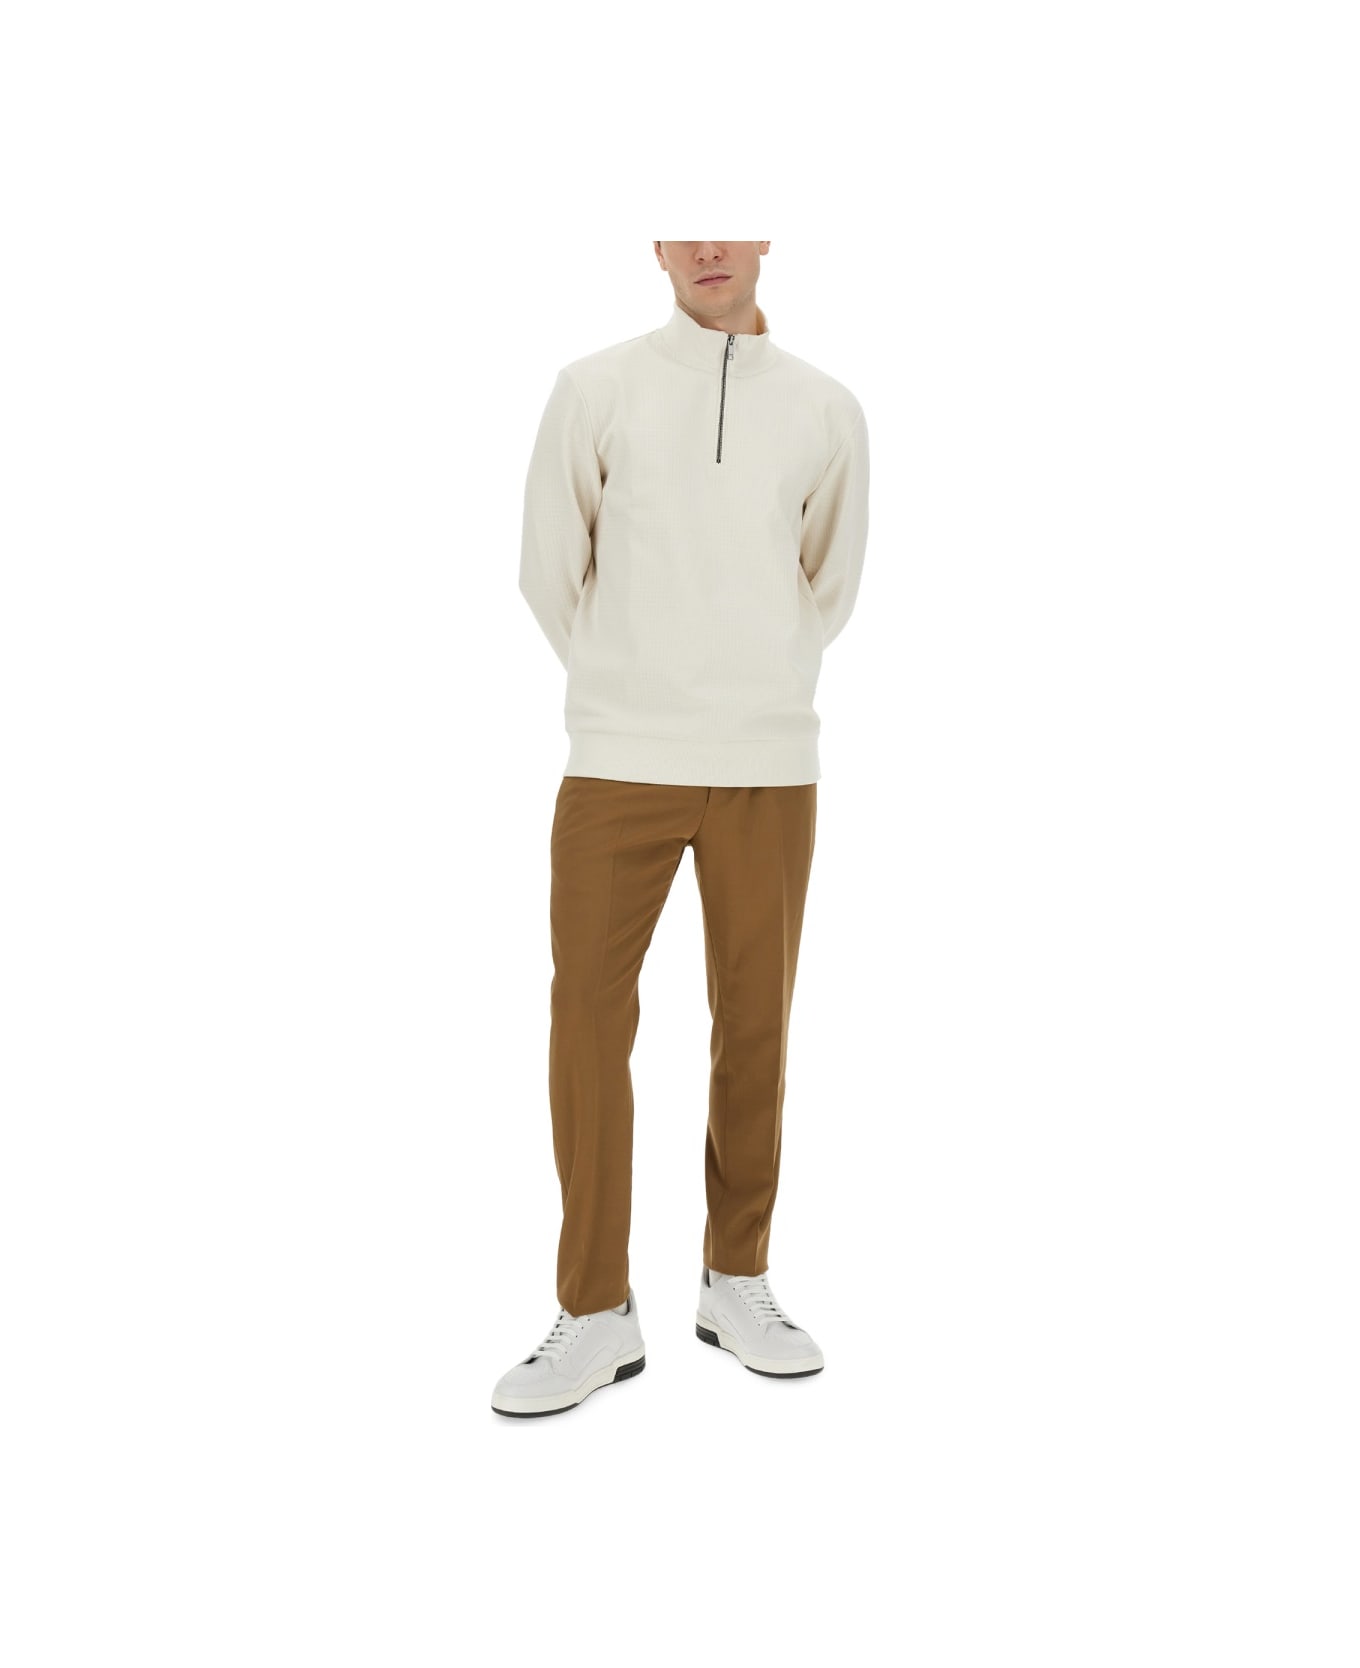 Hugo Boss Sweatshirt With Collar And Zipper - WHITE フリース